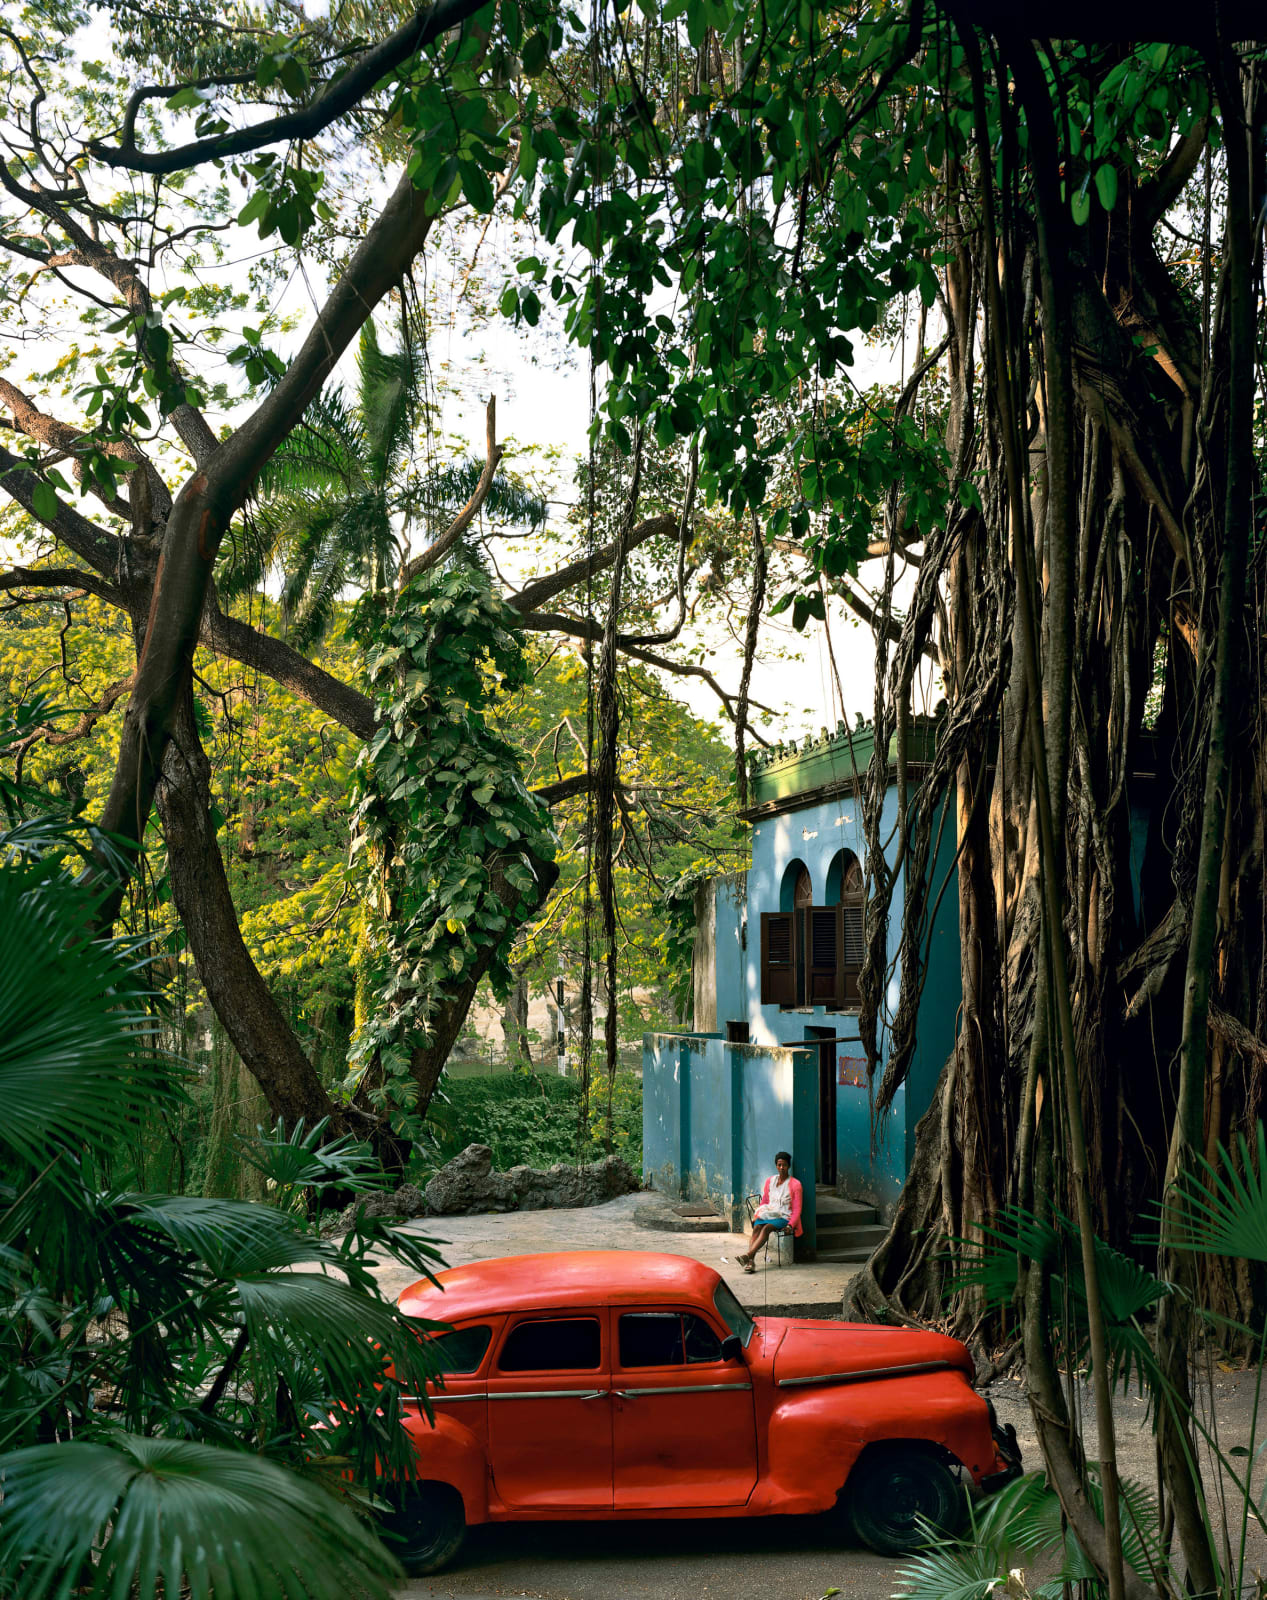 Andrew Moore, Rosa en la Tropical, 1999